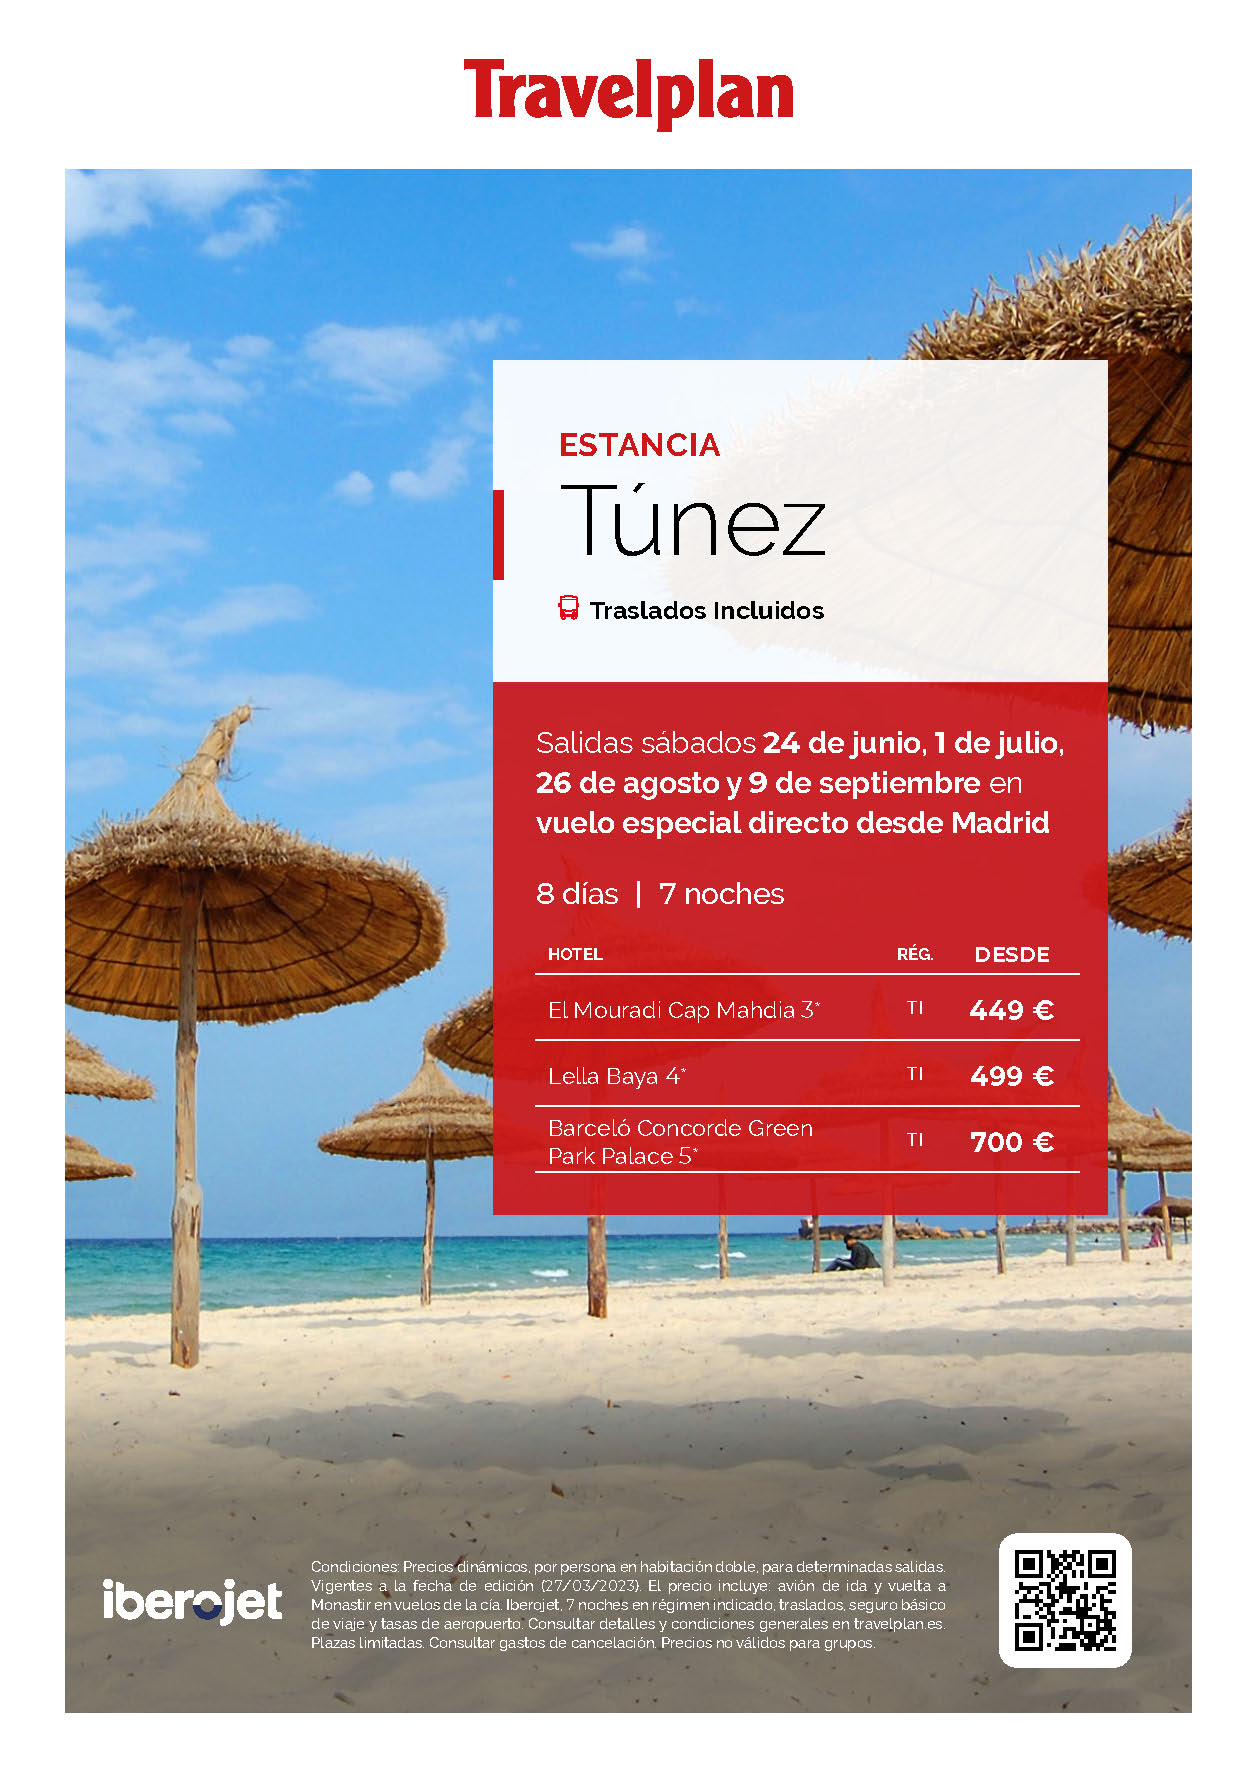 Oferta Travelplan Estancia en Tunez 8 dias en Todo Incluido salidas de Junio a Septiembre 2023 en vuelo especial directo desde Madrid